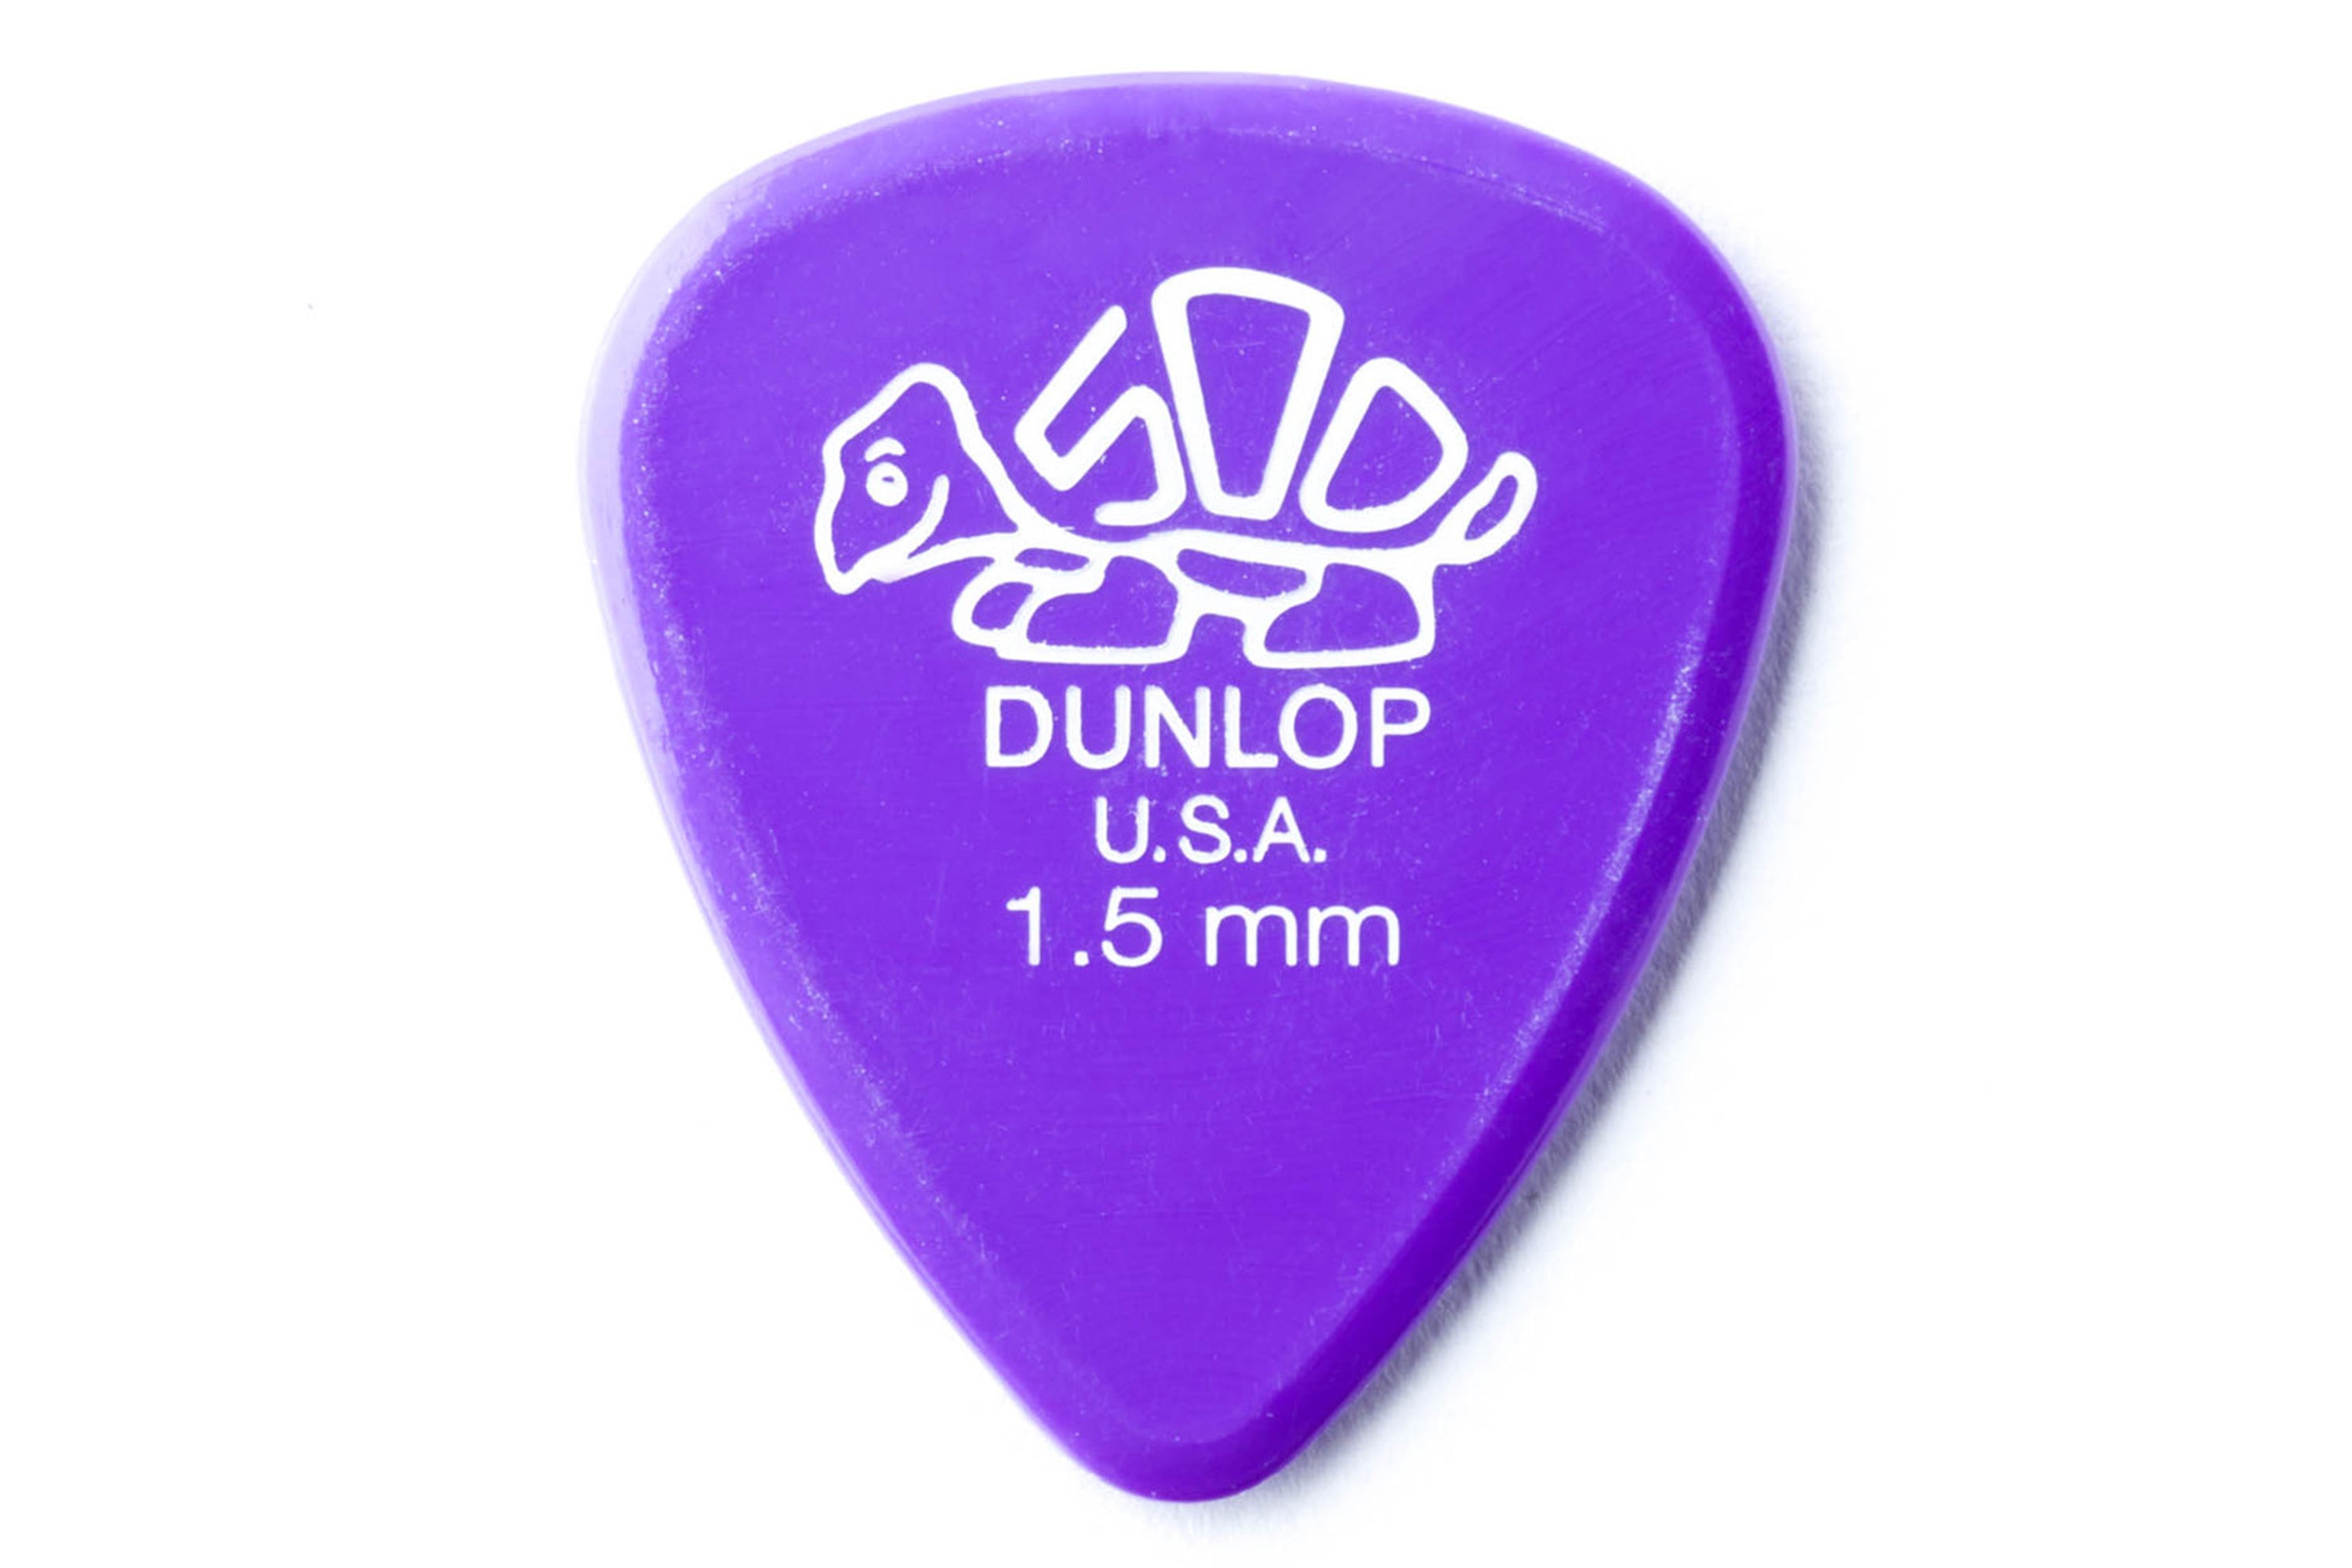 Dunlop Delrin 500 Standard 1.5mm Lavender Guitar & Ukulele Pick - SINGLE PICK